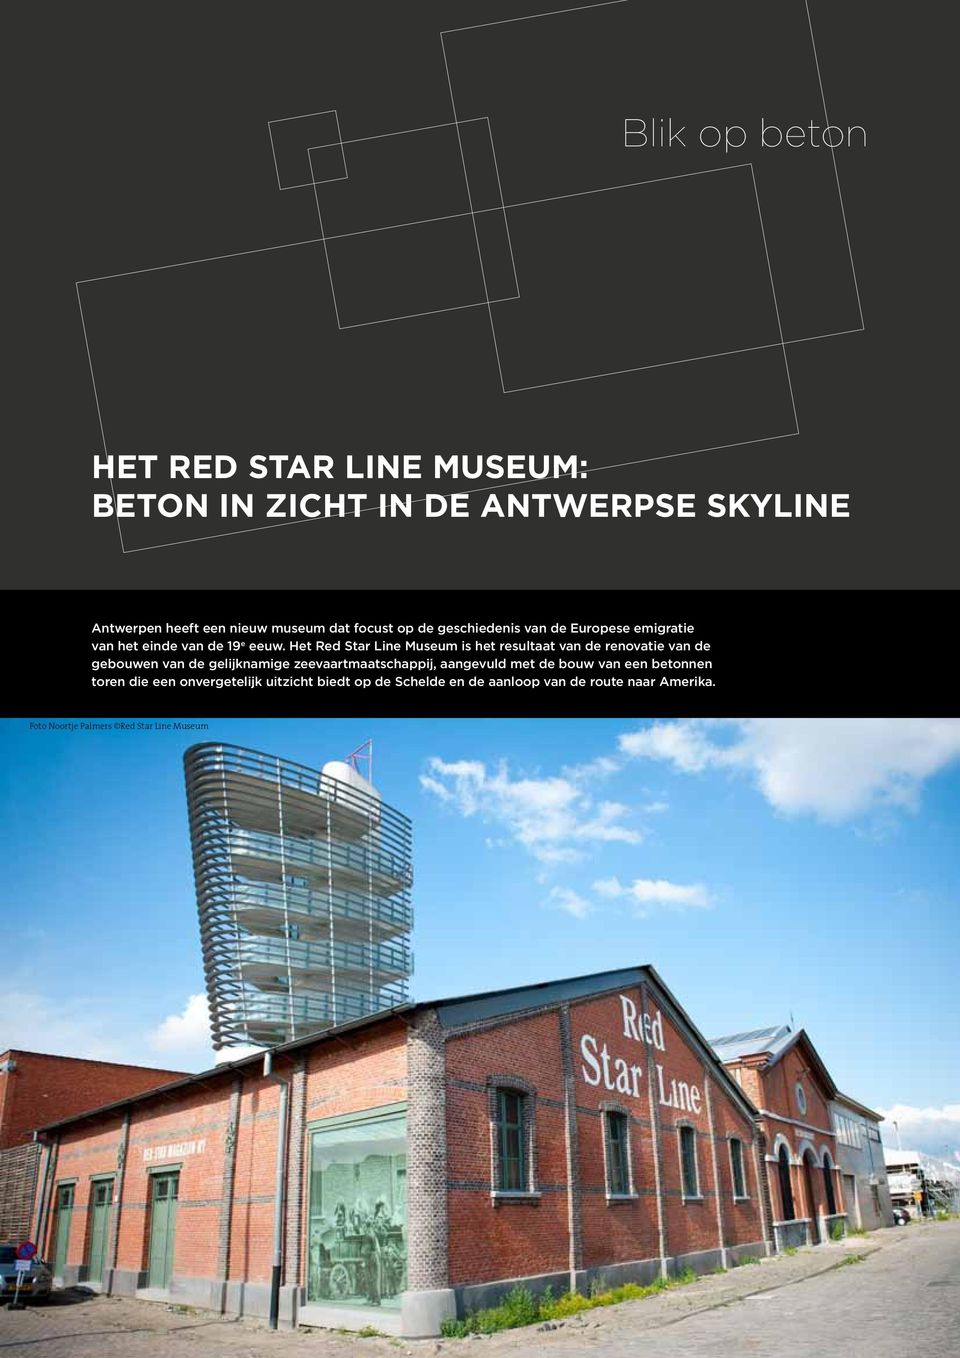 Het Red Star Line Museum is het resultaat van de renovatie van de gebouwen van de gelijknamige zeevaartmaatschappij,